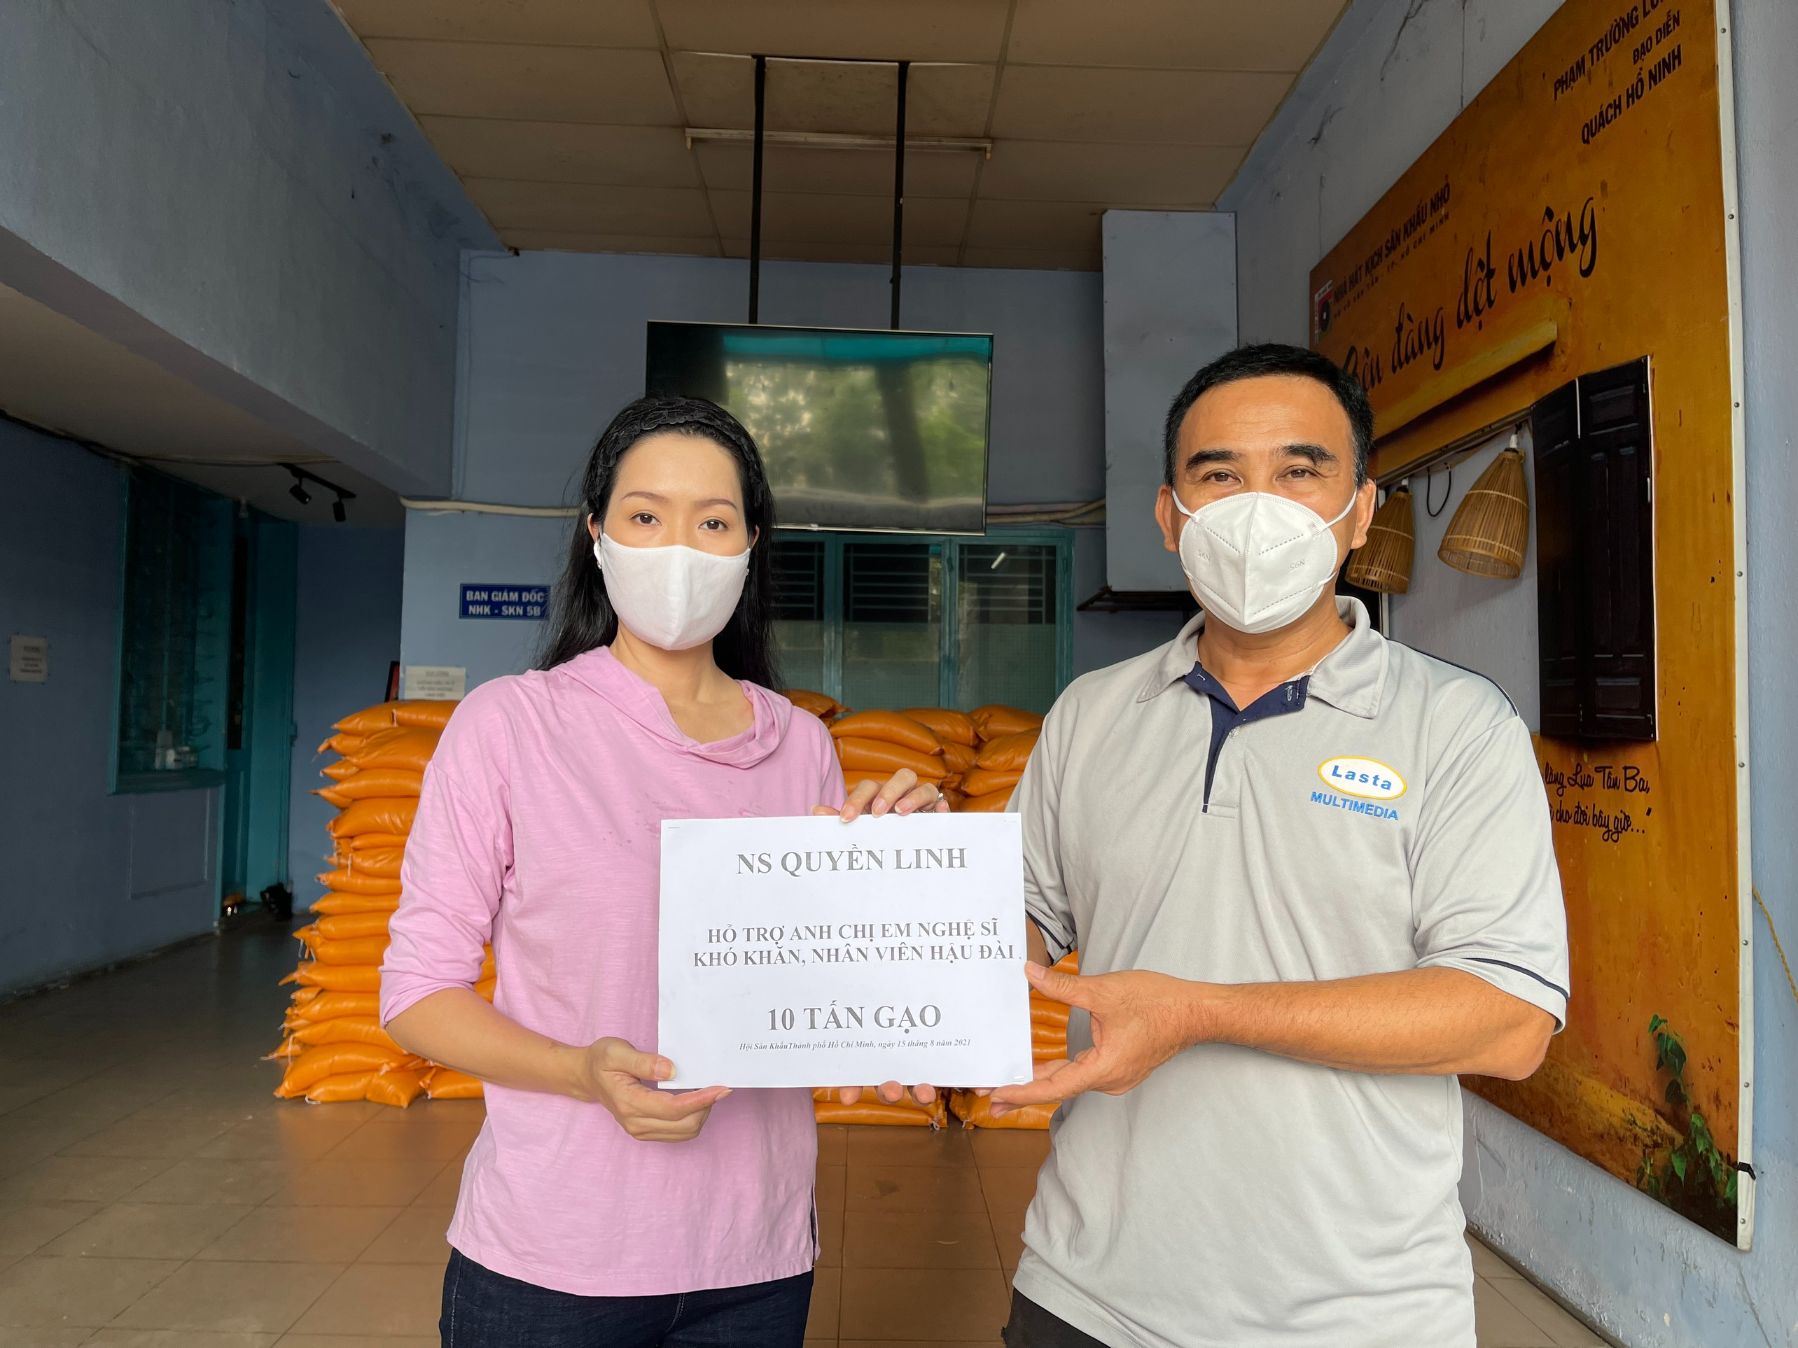 NSƯT Trịnh Kim Chi nhận 10 tấn gạo từ thiện của MC Quyền Linh 6 NSƯT Trịnh Kim Chi nhận 10 tấn gạo từ MC Quyền Linh, dốc lòng giúp đỡ các nghệ sĩ nghèo mùa dịch